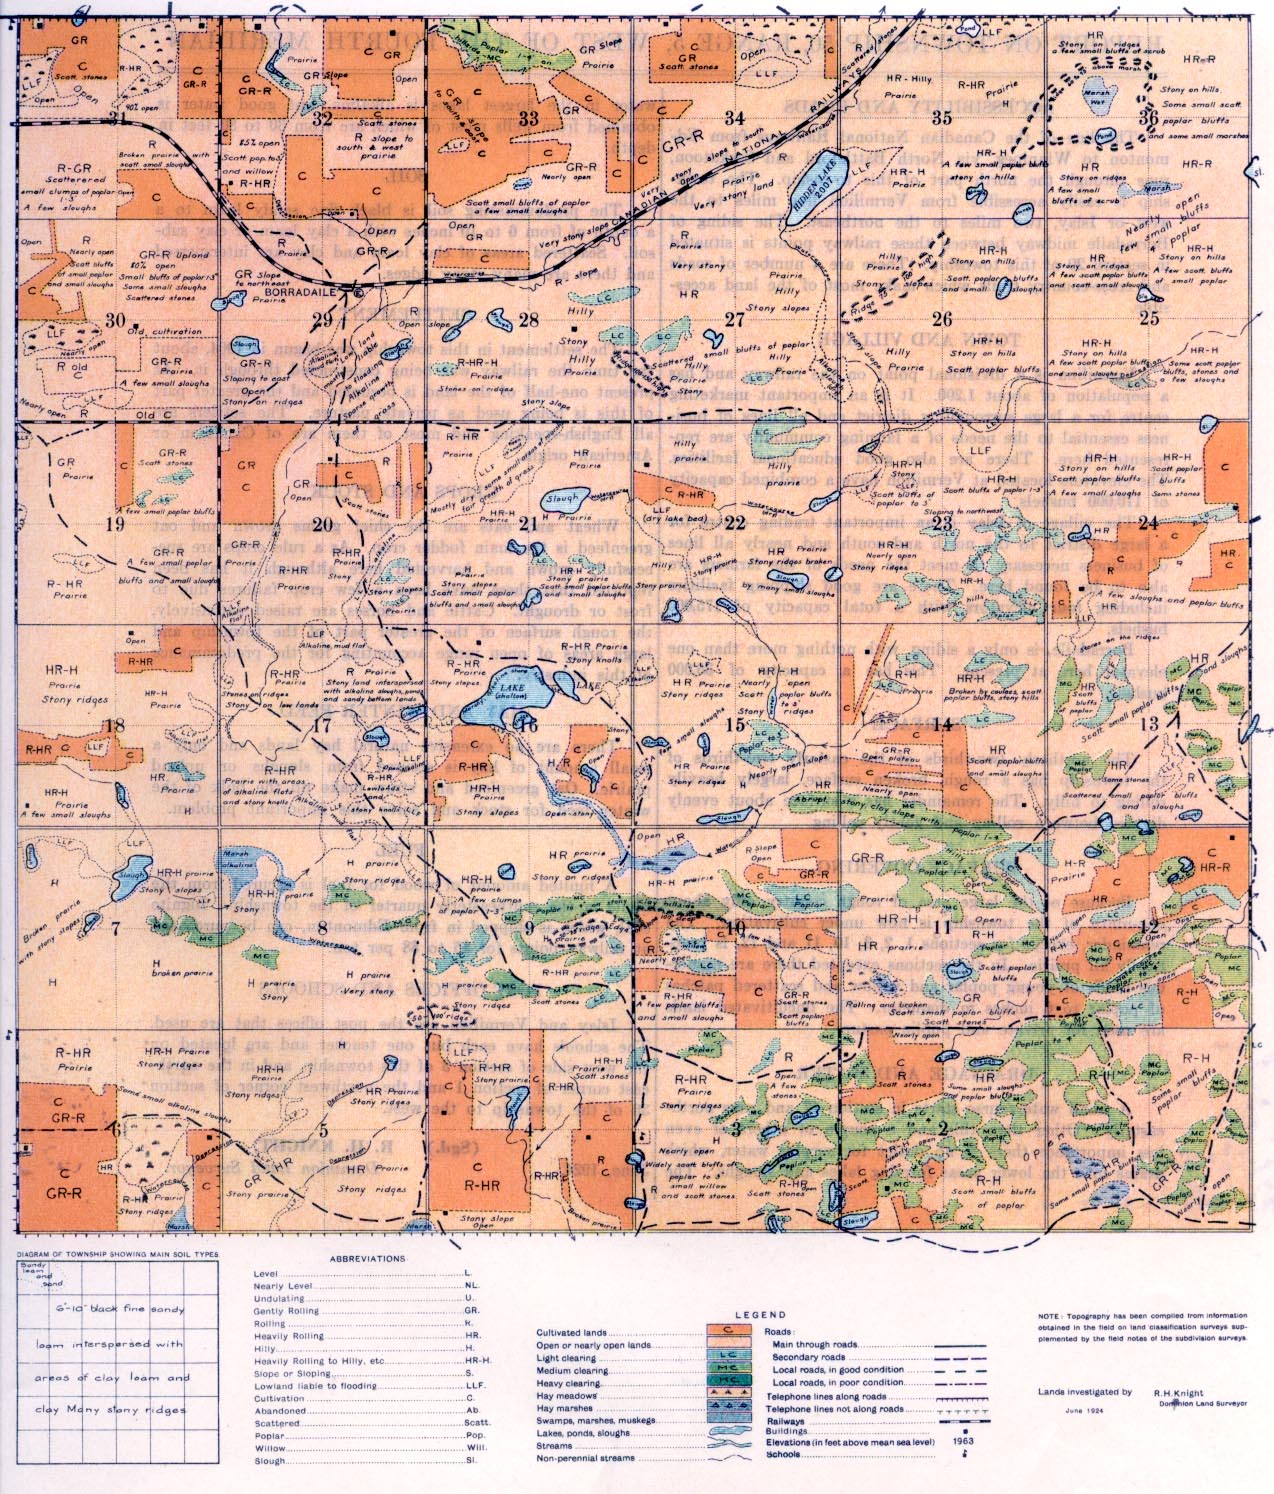 Township 50 Range 5 w 4th 1924